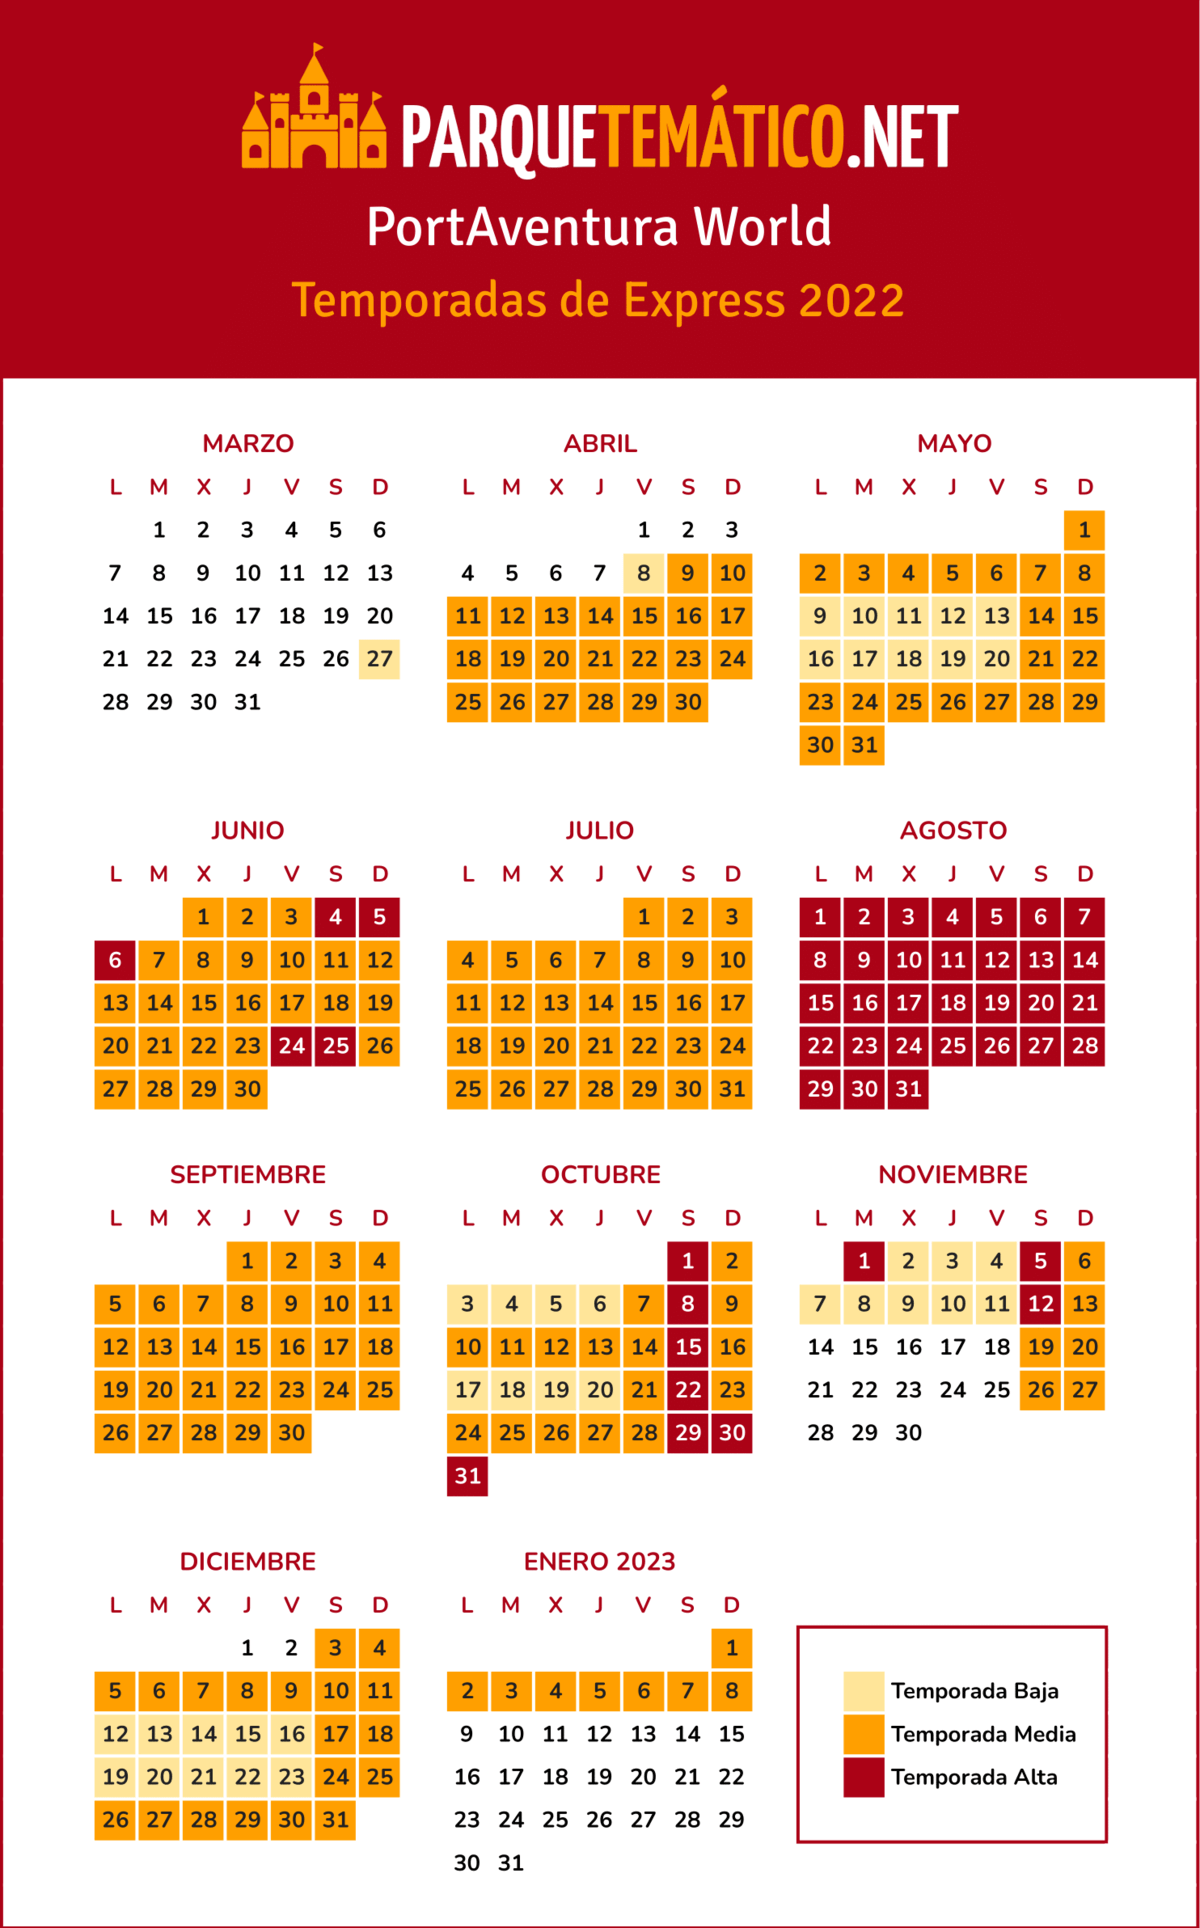 Calendario temporadas Express PortAventura 2022 v2